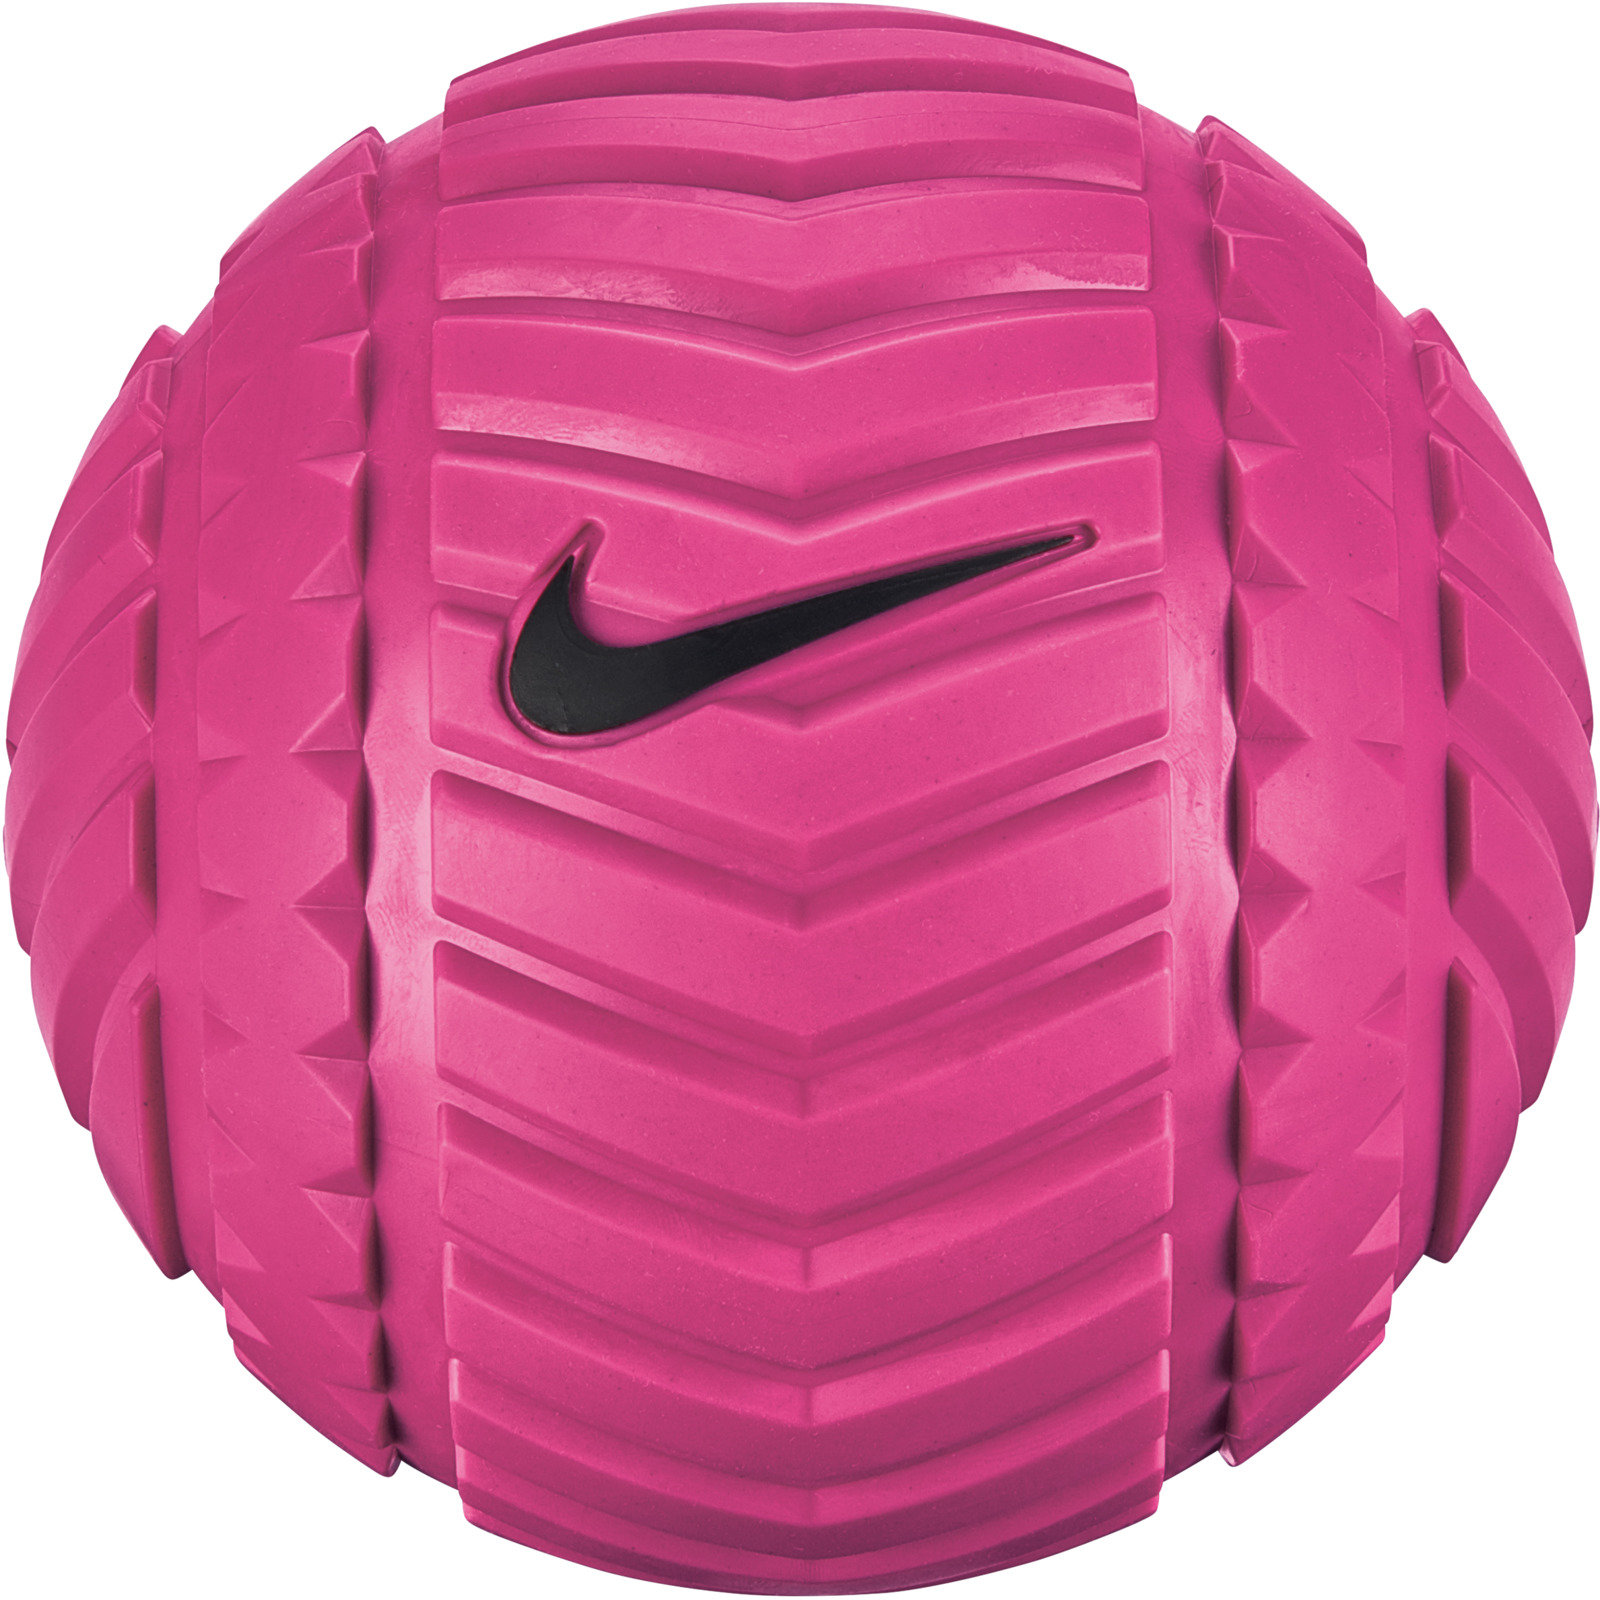 Мяч массажный Nike, цвет: серый, розовый